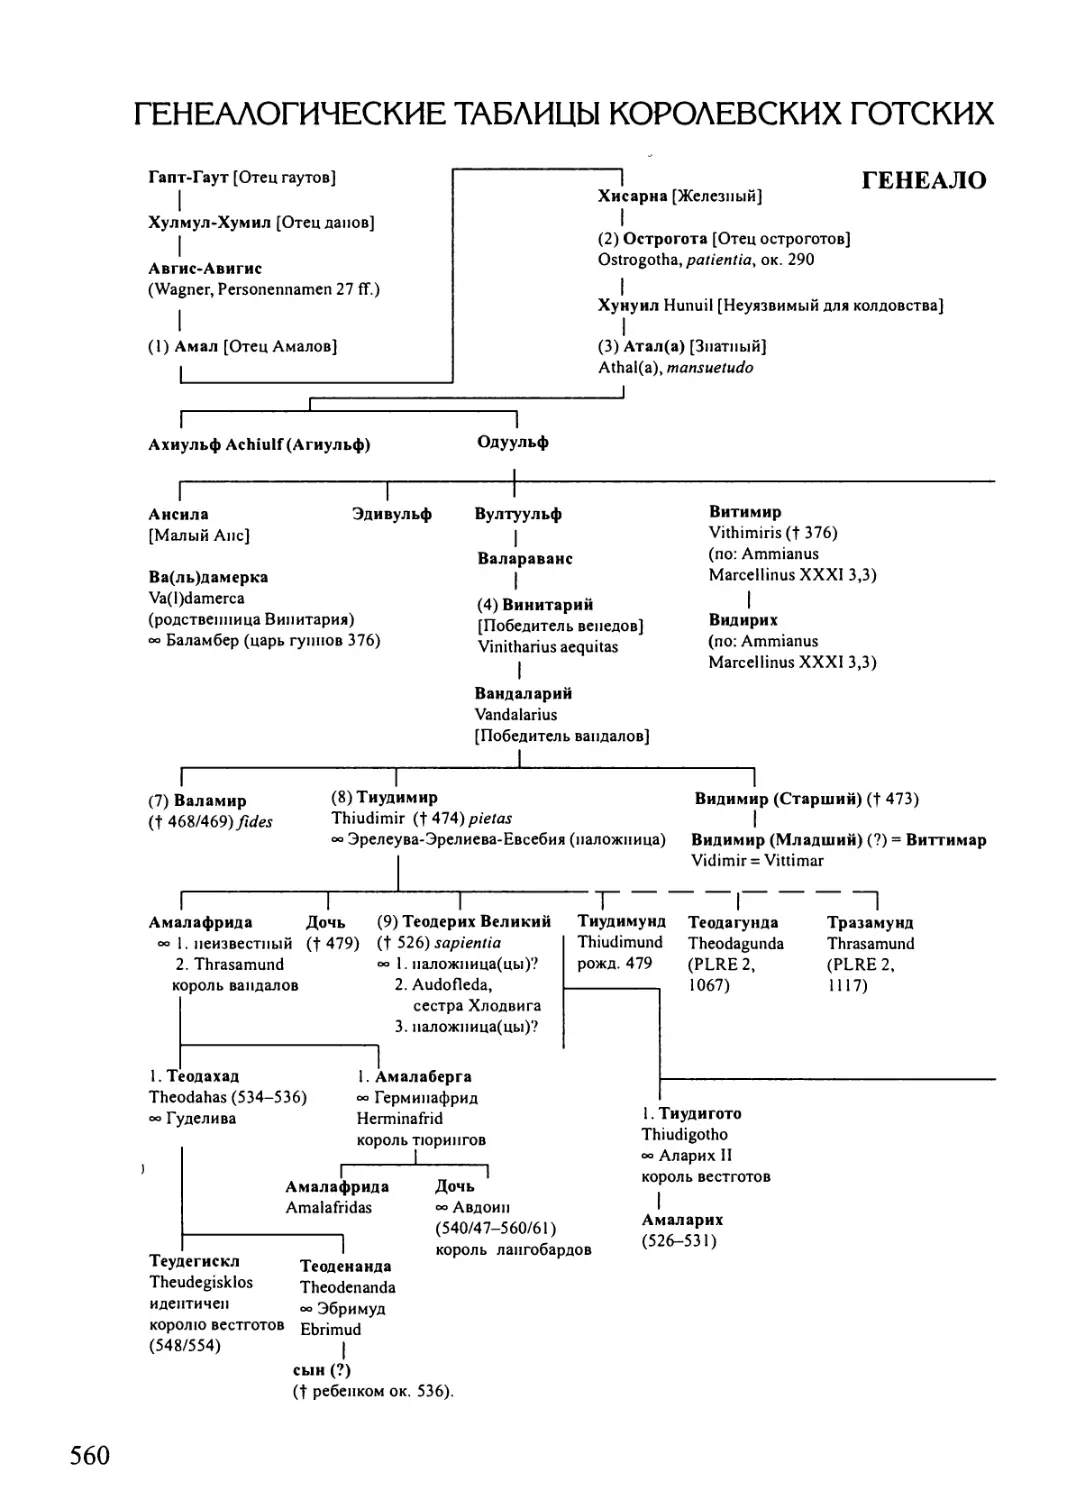 Приложение 5. Генеалогические таблицы королевских готских родов балтов и амалов